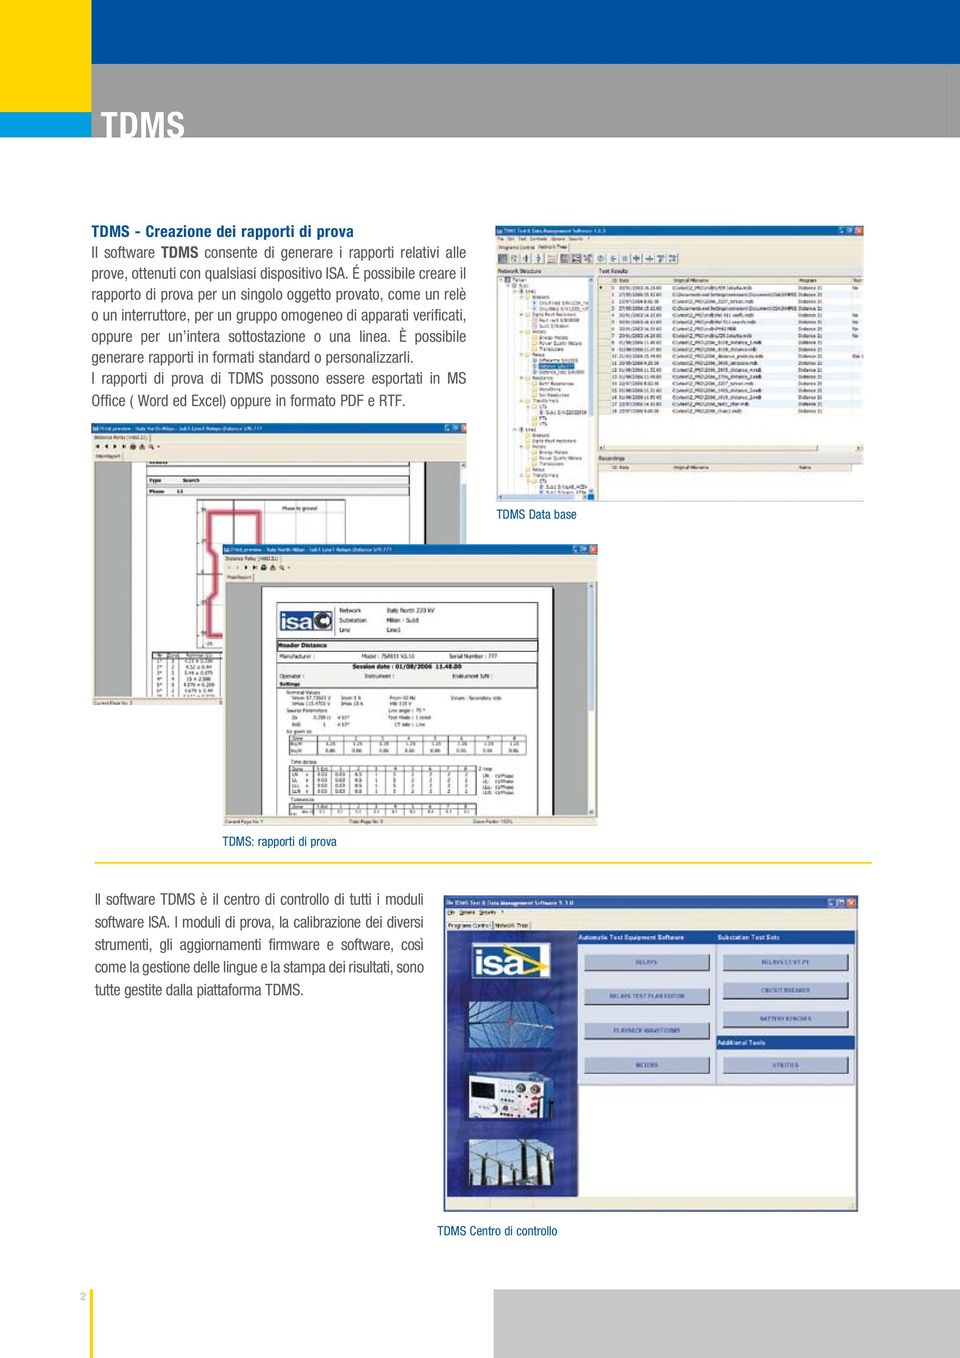 È possibile generare rapporti in formati standard o personalizzarli. I rapporti di prova di TDMS possono essere esportati in MS Office ( Word ed Excel) oppure in formato PDF e RTF.